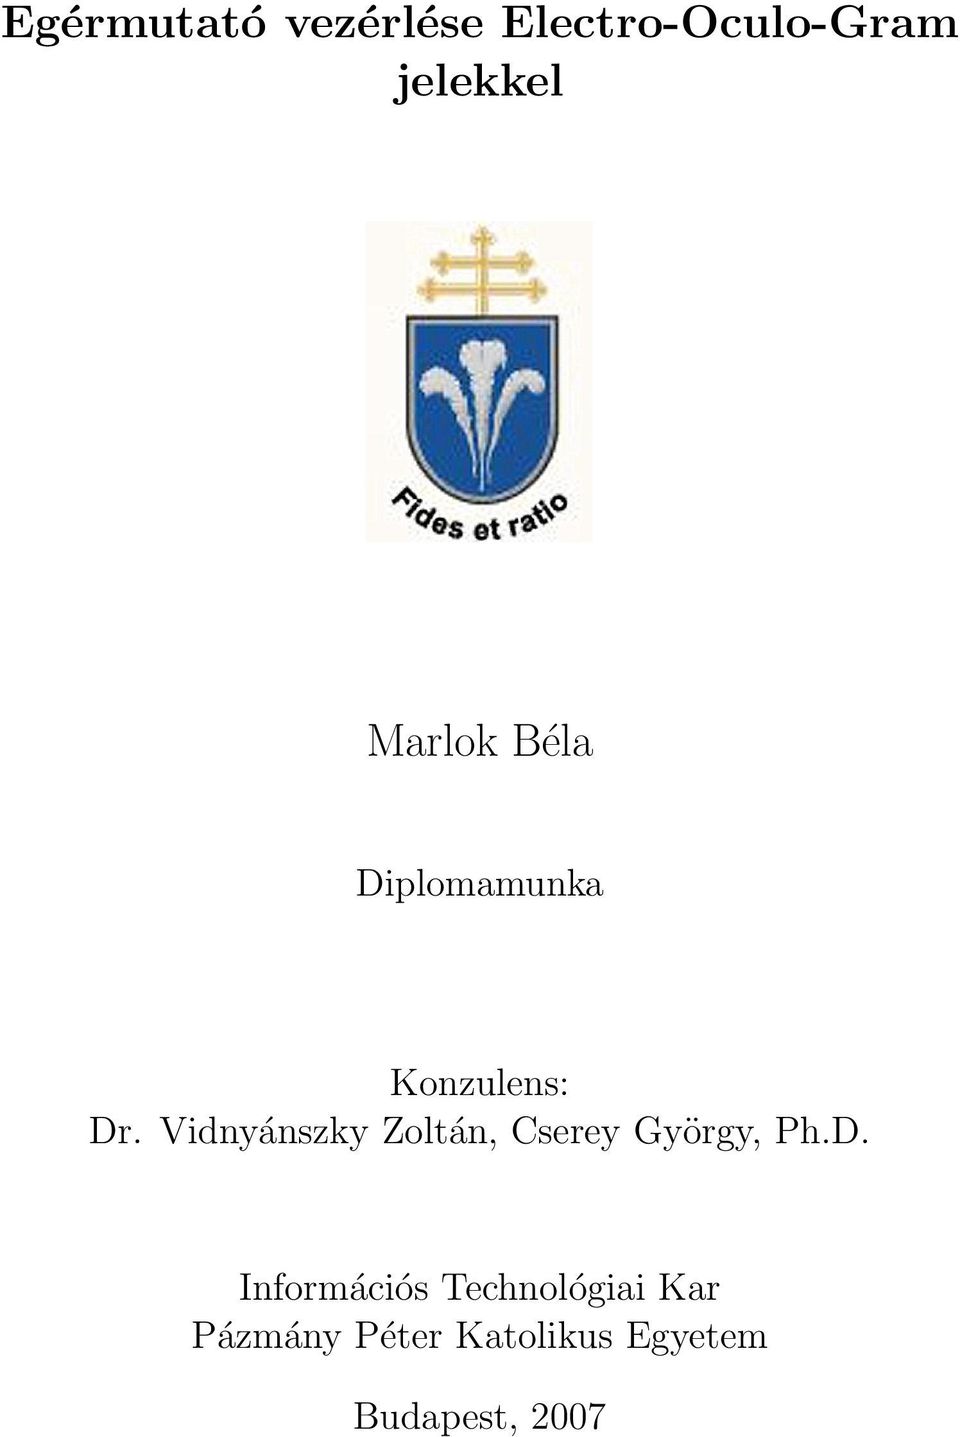 Vidnyánszky Zoltán, Cserey György, Ph.D.